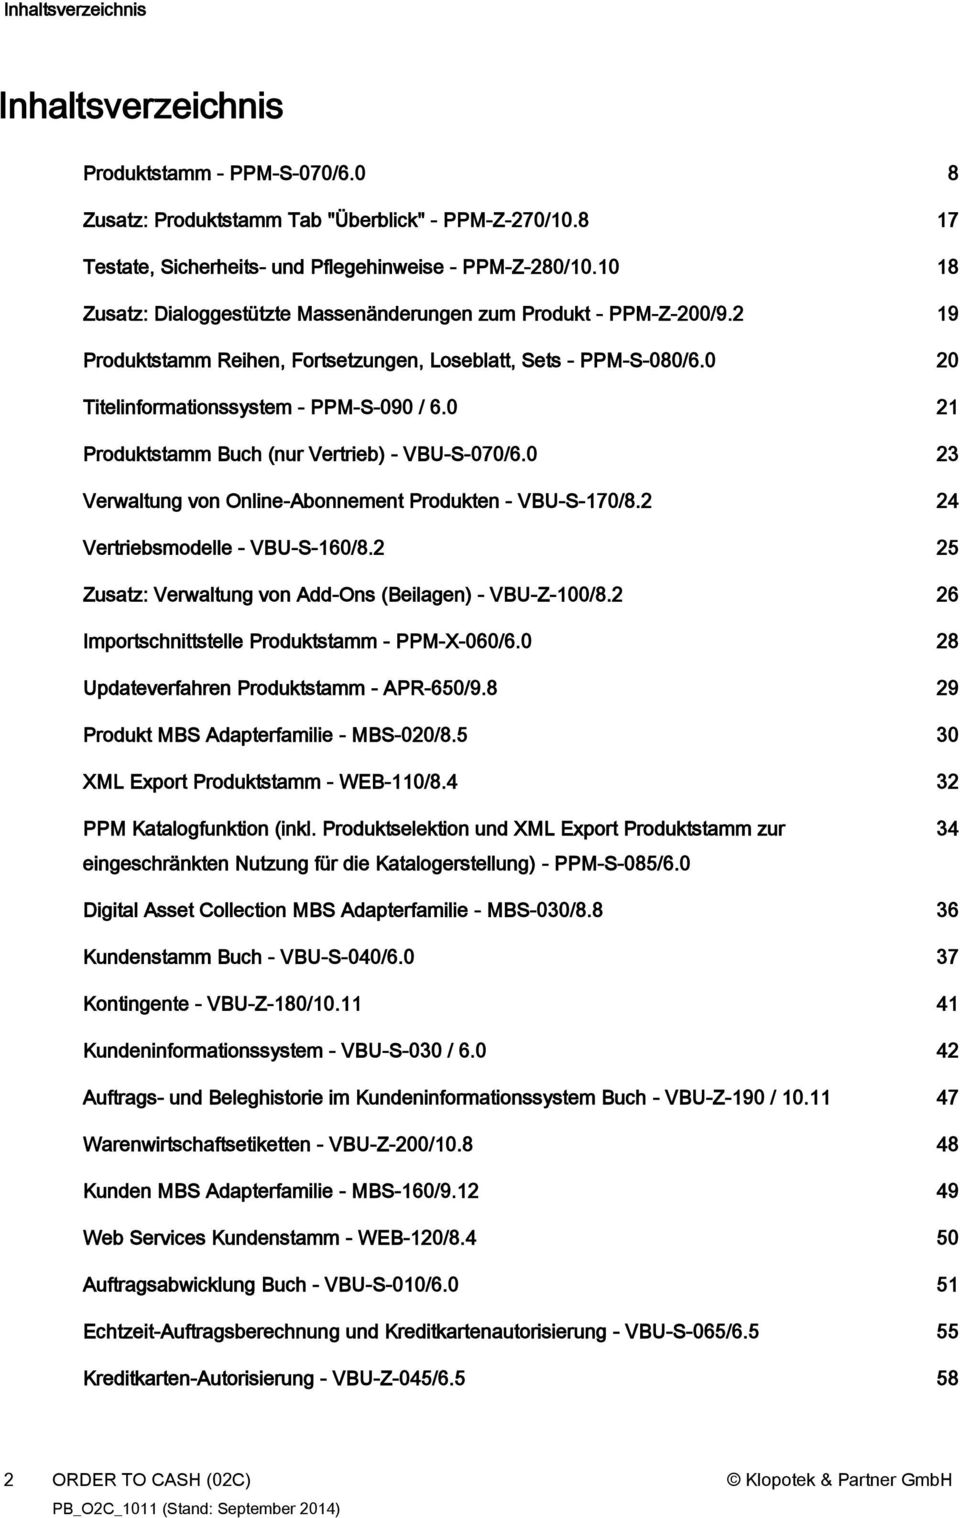 0 21 Produktstamm Buch (nur Vertrieb) - VBU-S-070/6.0 23 Verwaltung von Online-Abonnement Produkten - VBU-S-170/8.2 24 Vertriebsmodelle - VBU-S-160/8.